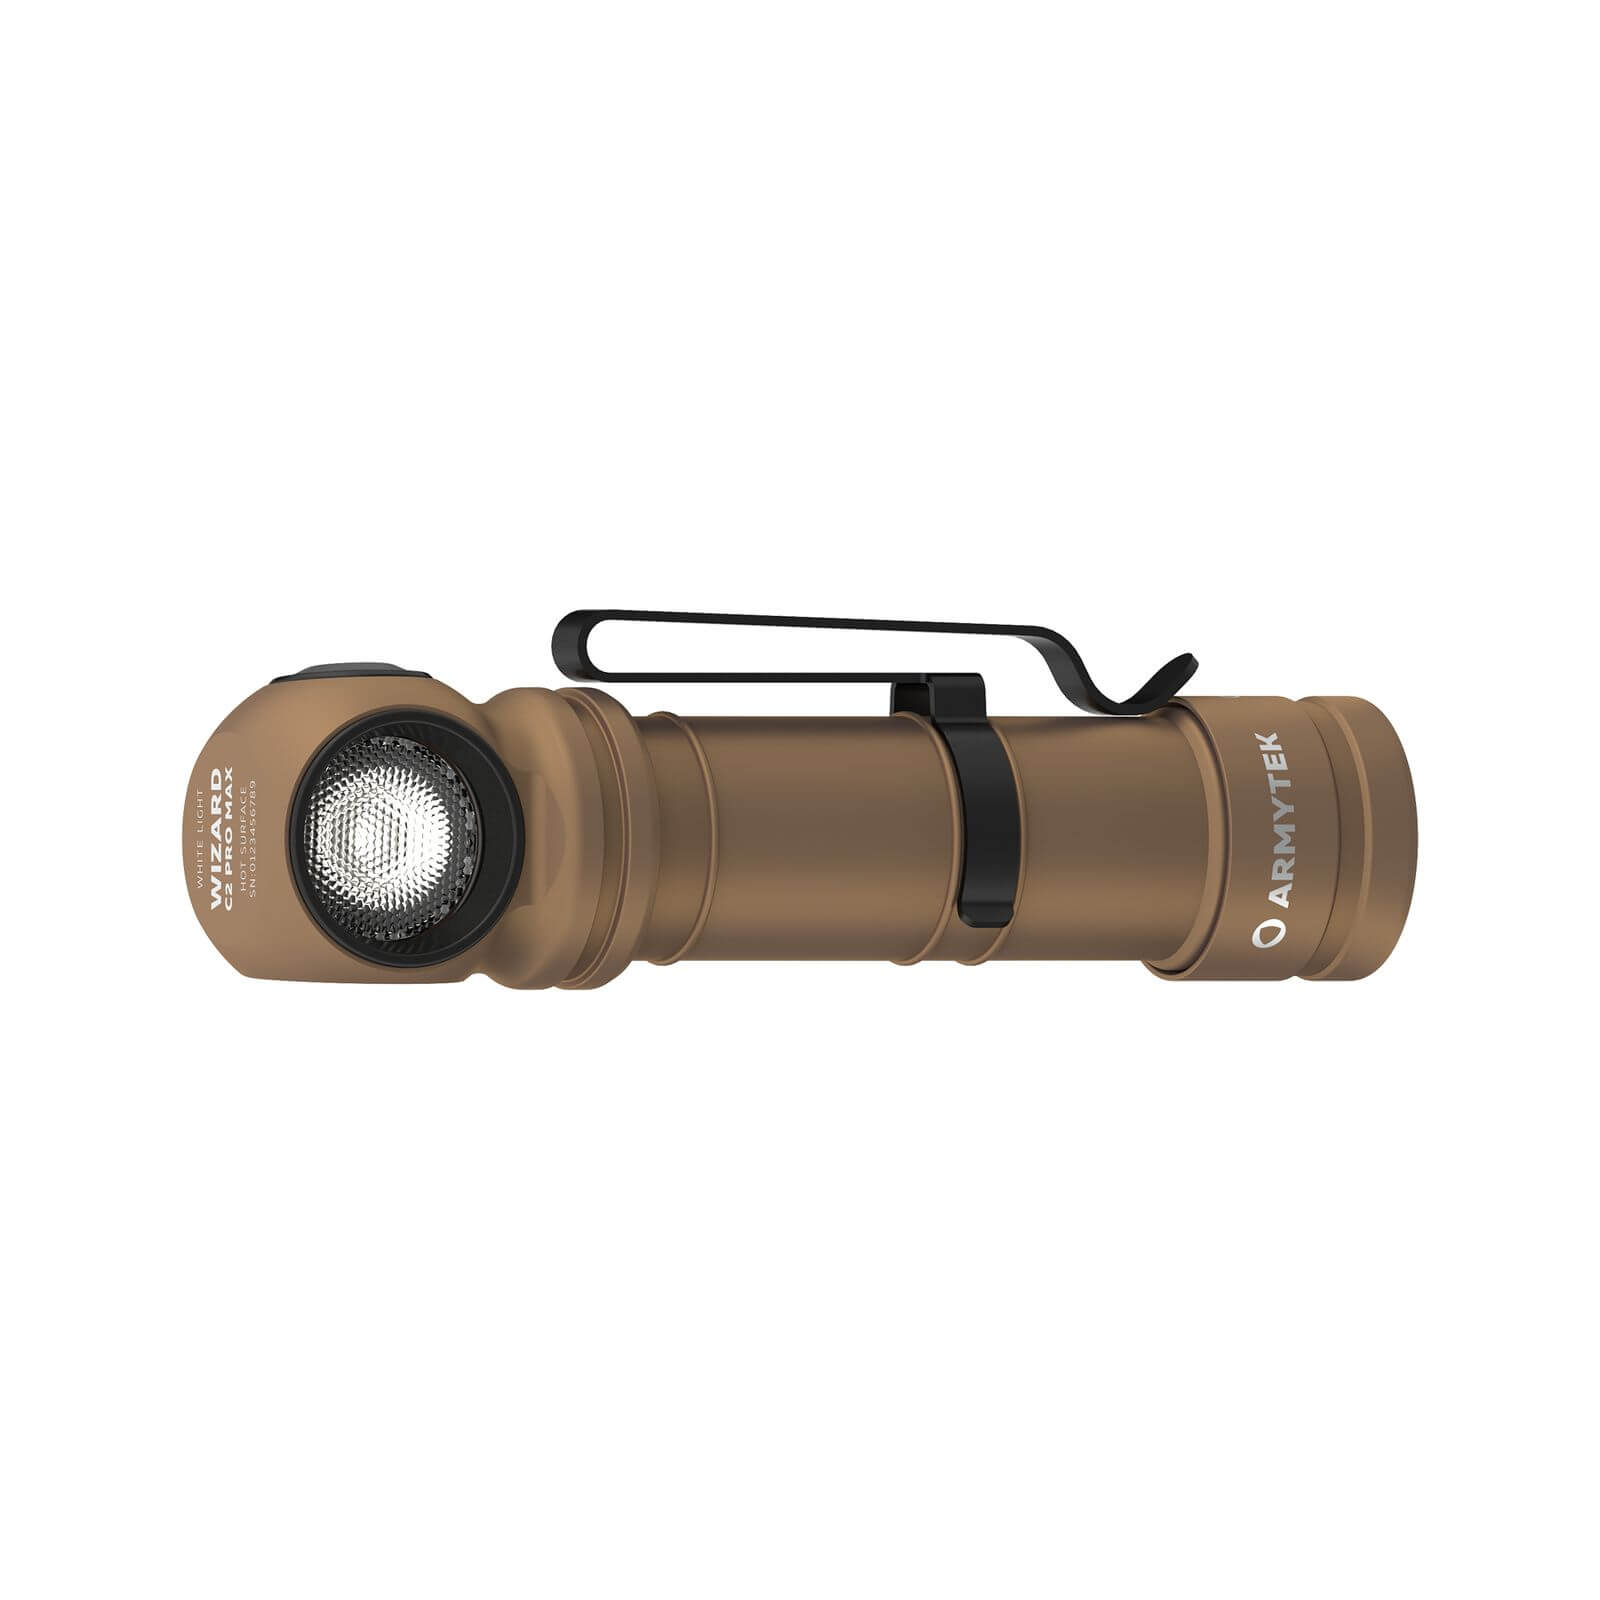 Armytek Wizard C2 Pro Max LED Stirnlampe sand kaltweiss Stirnlampe Taschenlampe